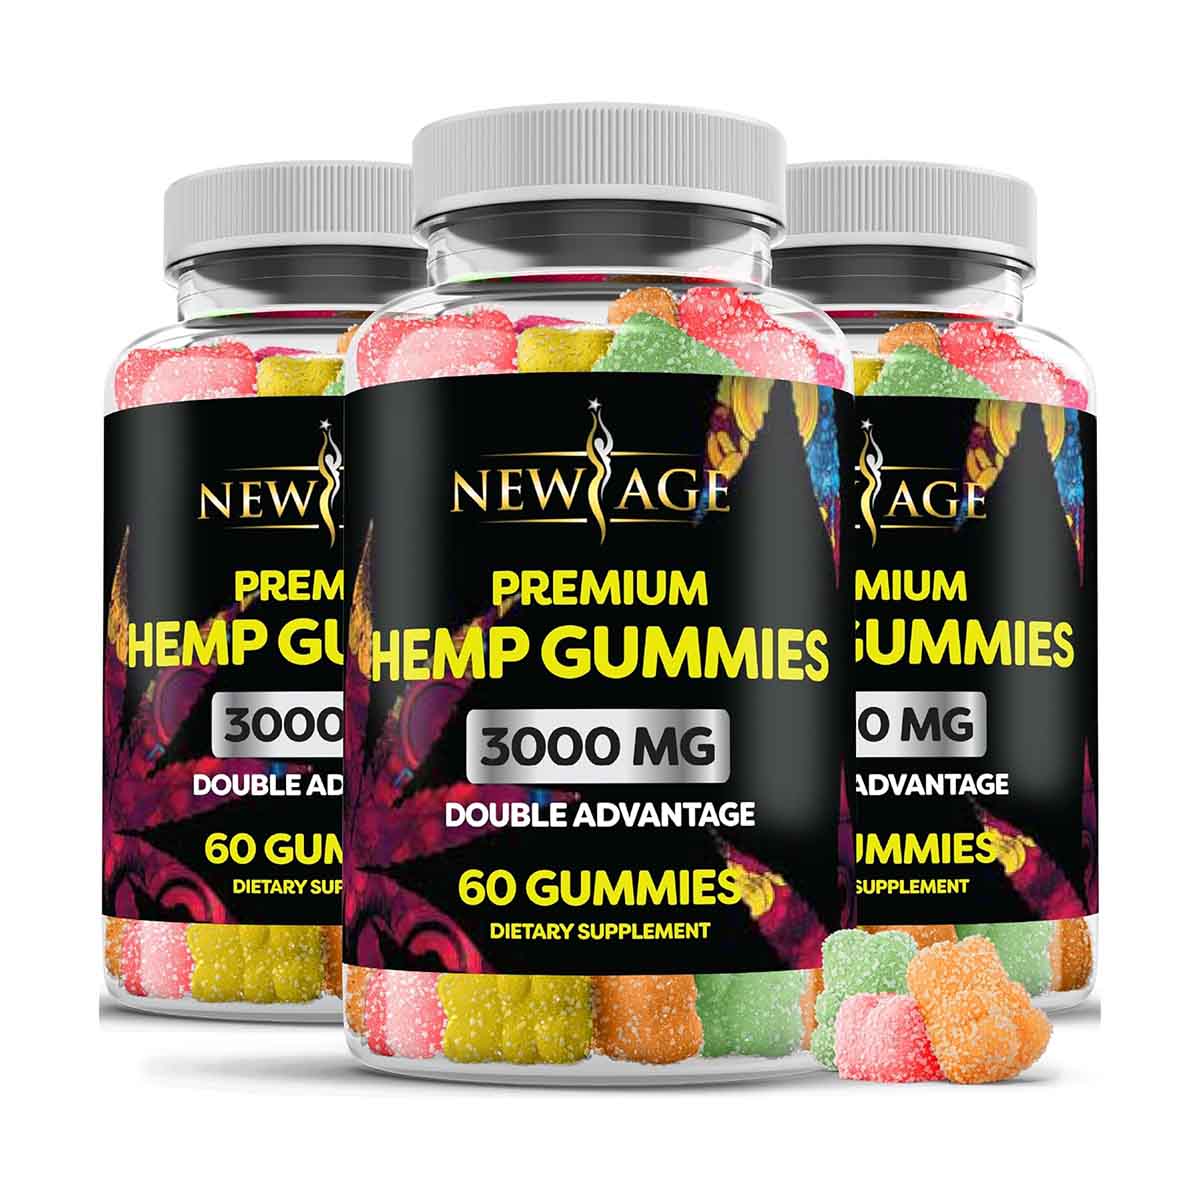 Bottles of New Age Naturals Advanced Hemp Gummies